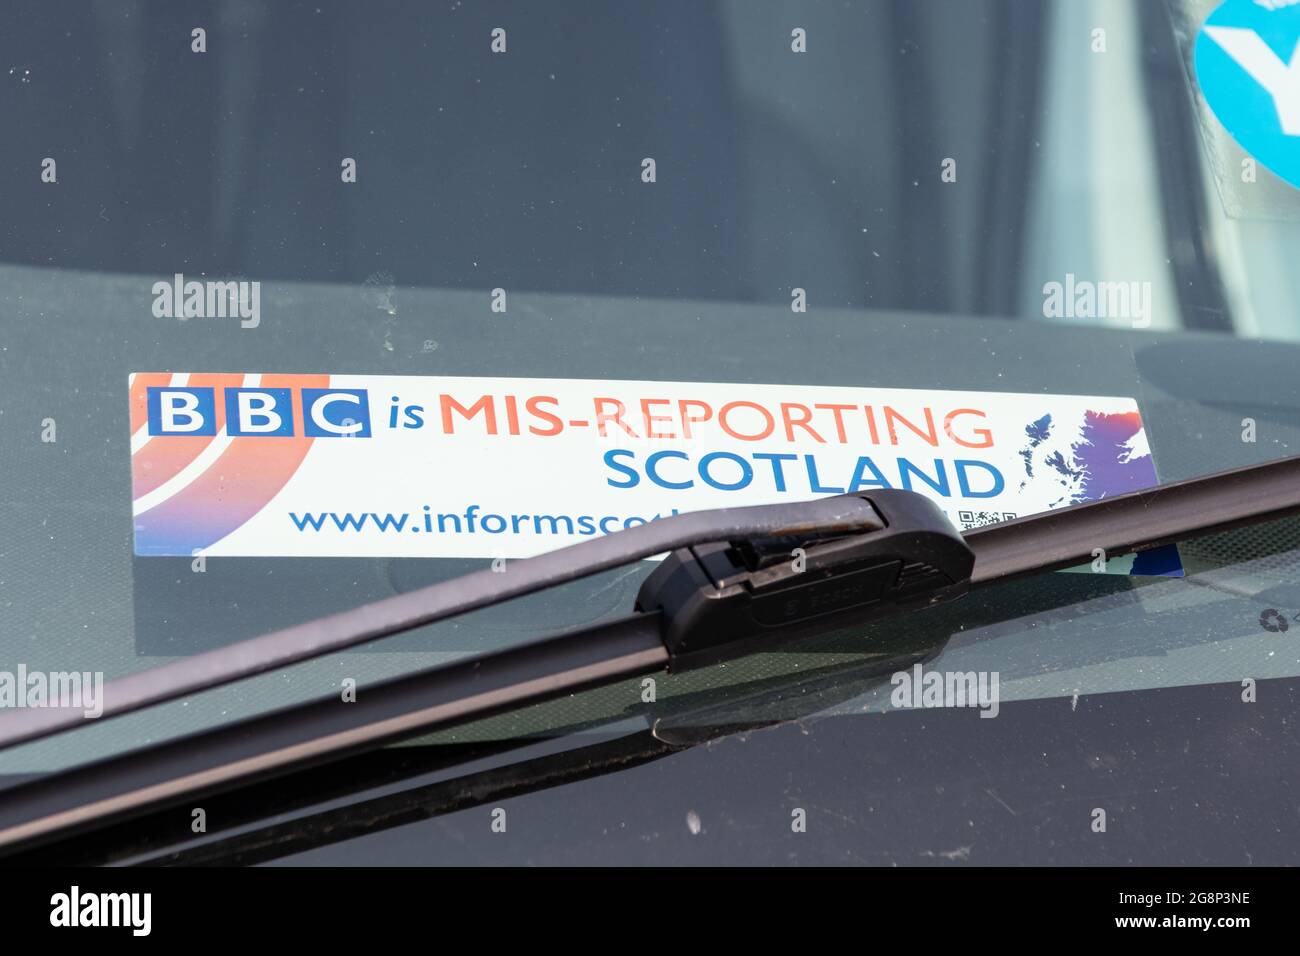 Informieren Sie Schottland: „die BBC meldet Schottland von Mis“-Aufkleber bei Fahrzeugkampagnen gegen BBC Scotland Bias - Schottland, Großbritannien Stockfoto